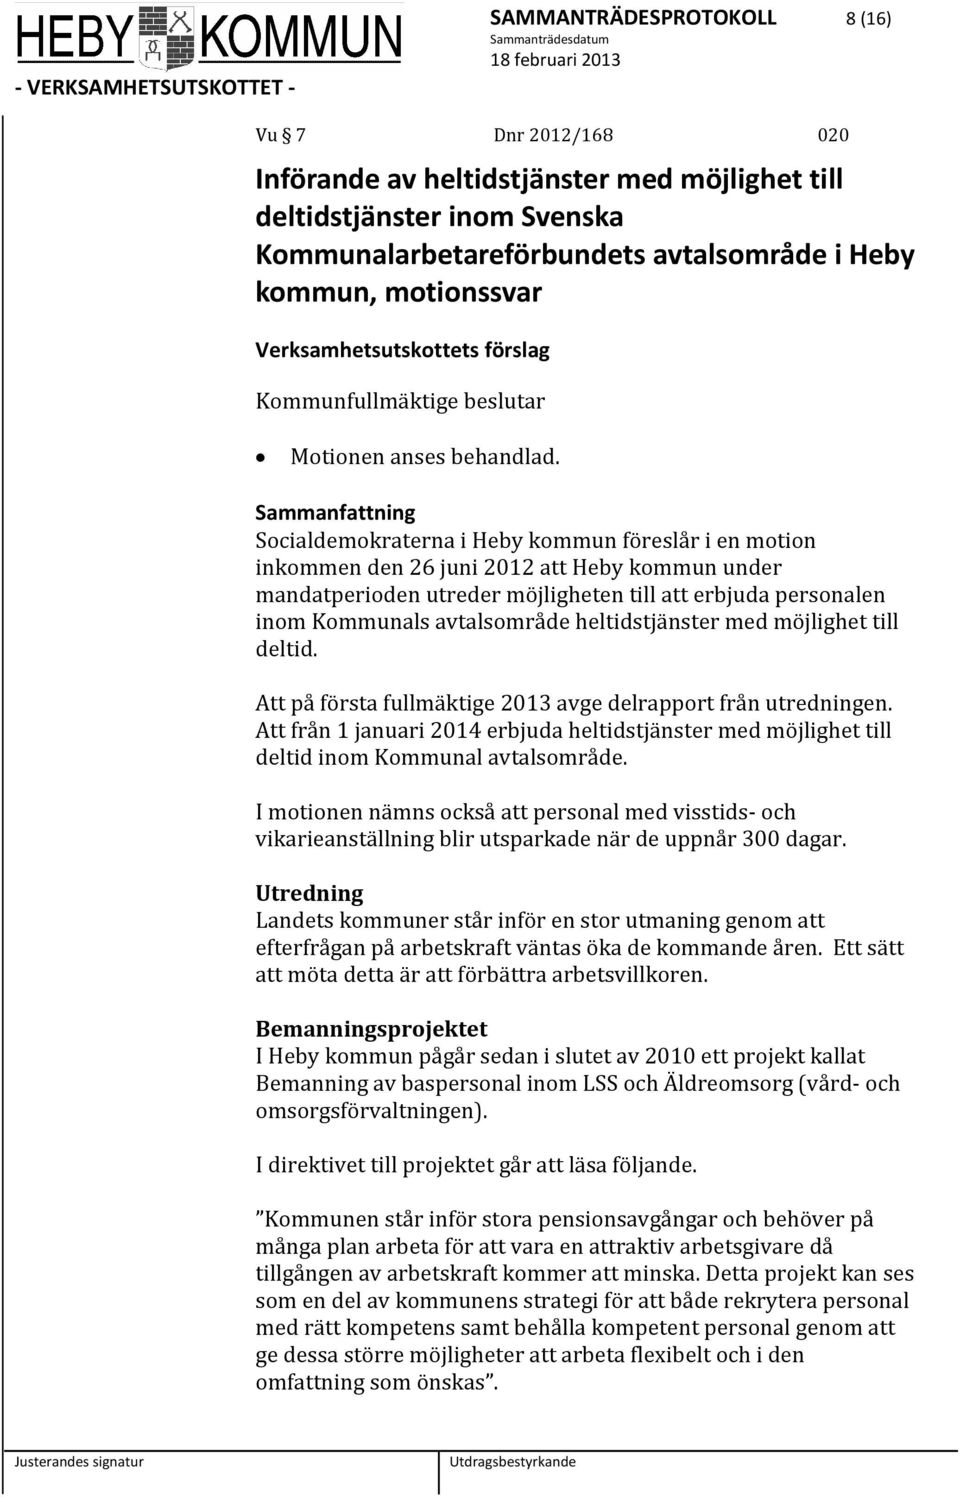 Socialdemokraterna i Heby kommun föreslår i en motion inkommen den 26 juni 2012 att Heby kommun under mandatperioden utreder möjligheten till att erbjuda personalen inom Kommunals avtalsområde